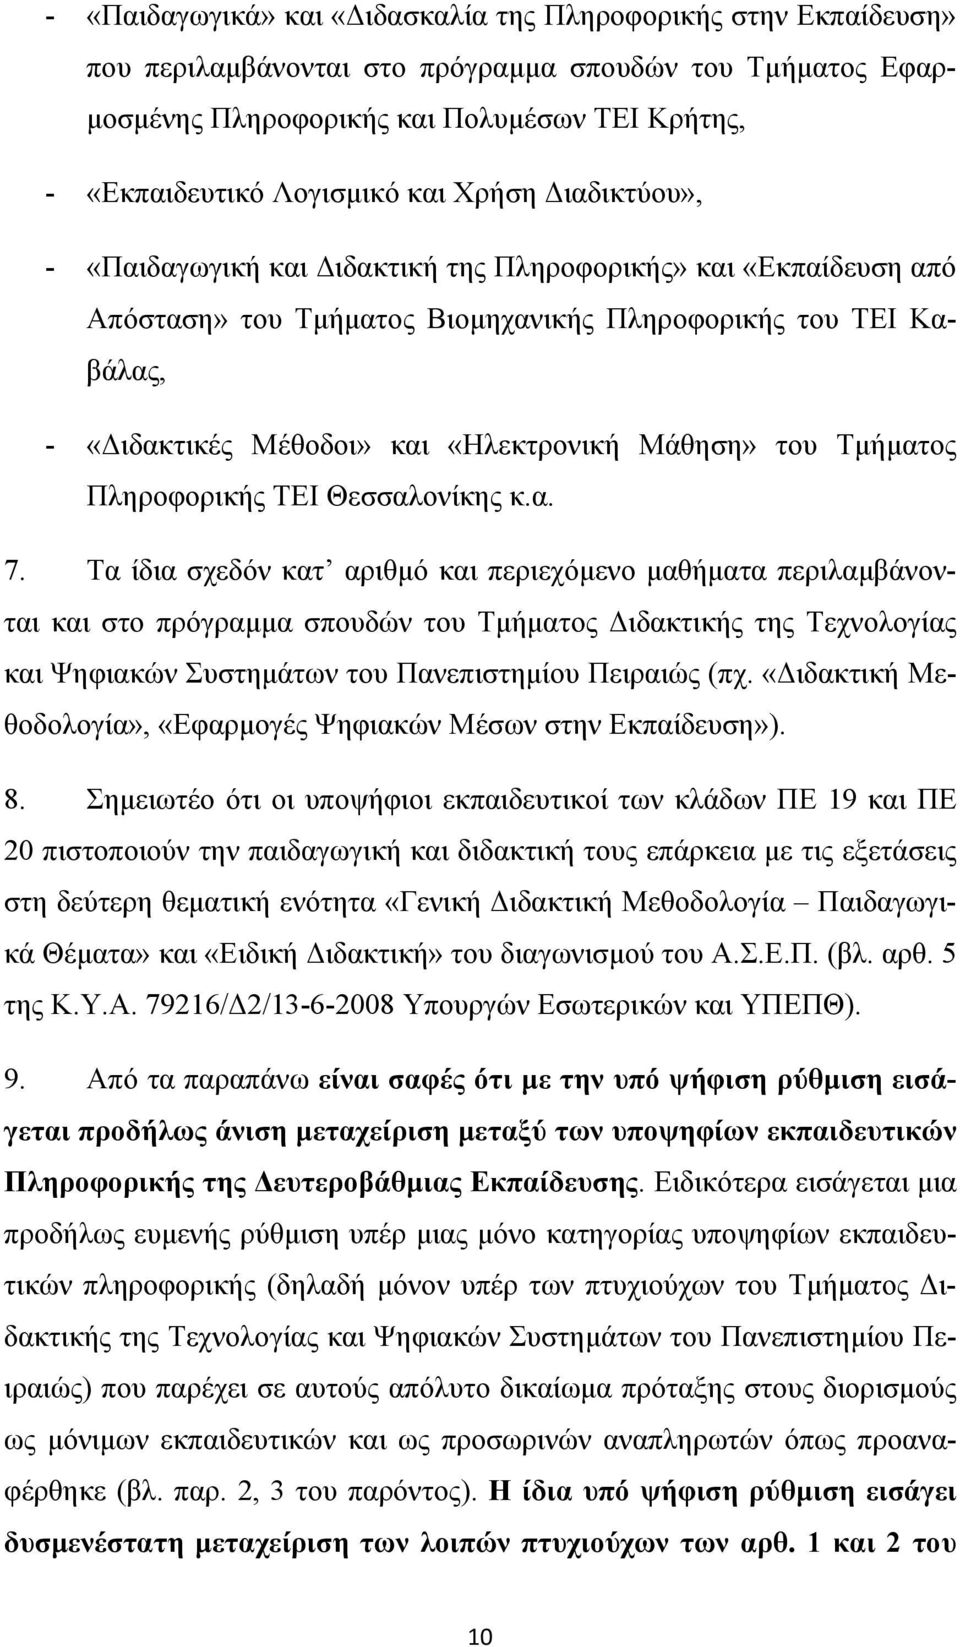 Μάθηση» του Τμήματος Πληροφορικής ΤΕΙ Θεσσαλονίκης κ.α. 7.